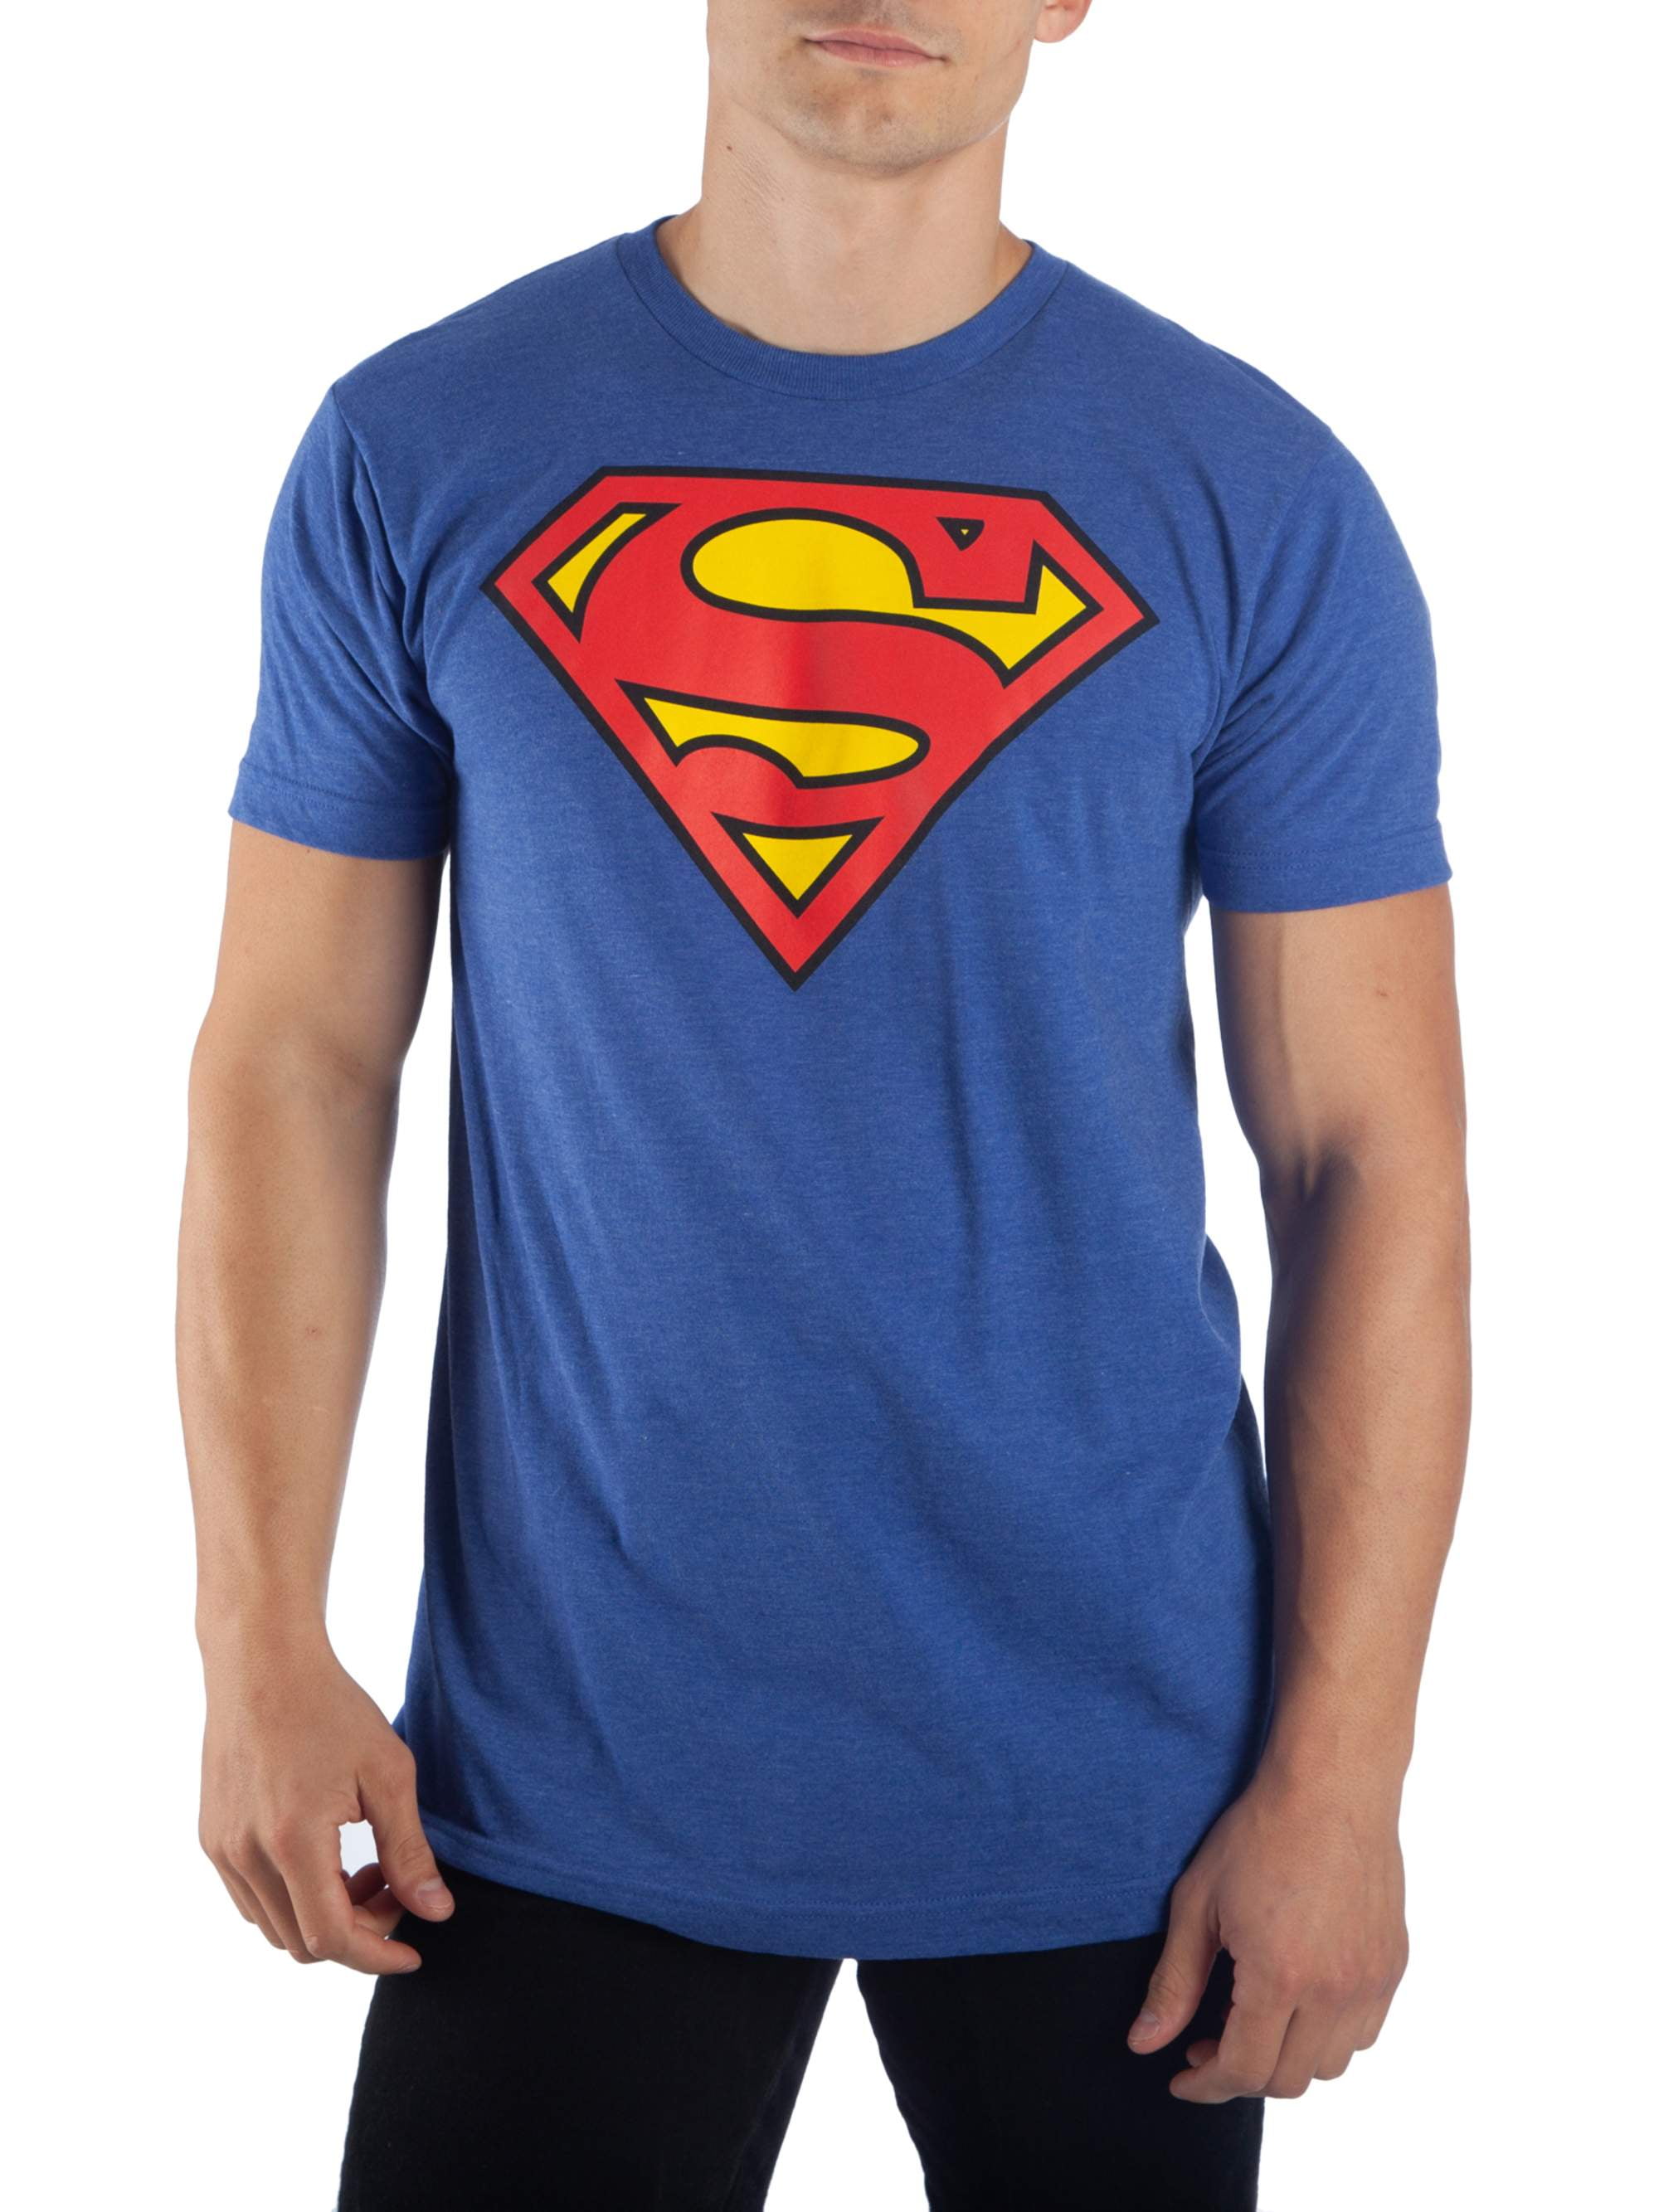 Shirts & Hemden S - XL BLUE SUPERMAN LOGO MENS T-SHIRT OFFICIAL ...